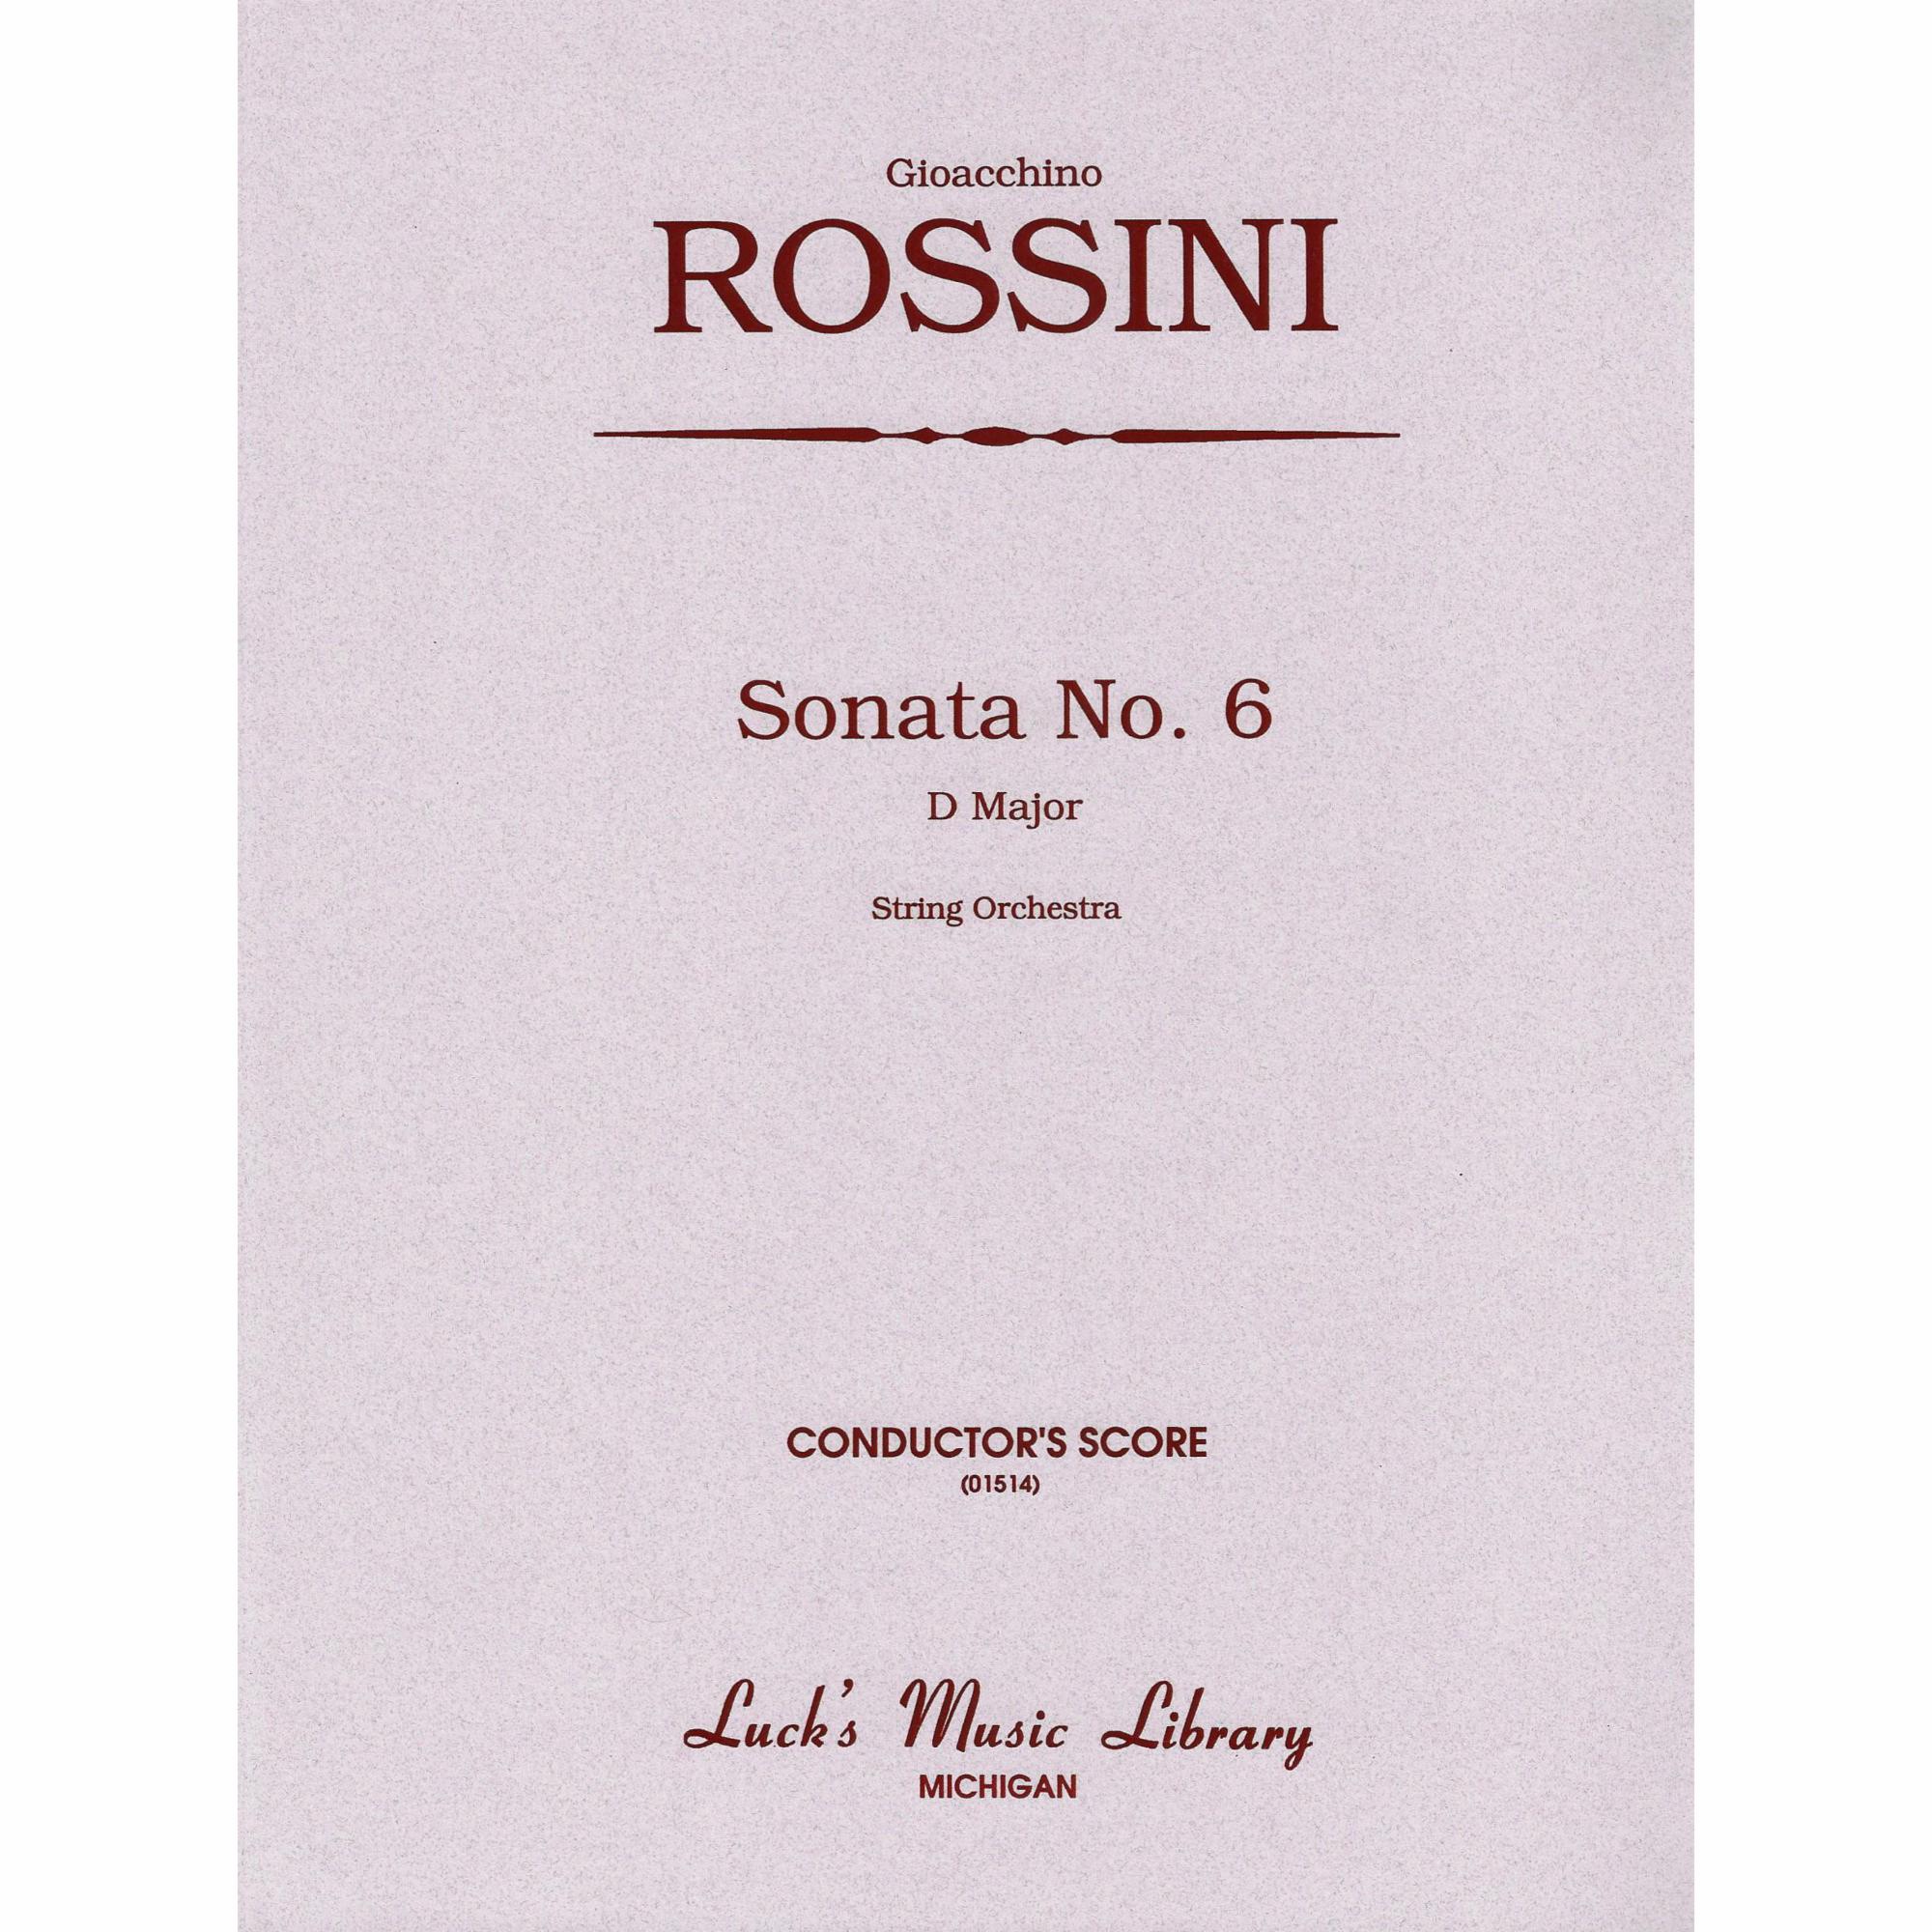 Rossini -- Sonata No. 6 in D Major for String Orchestra